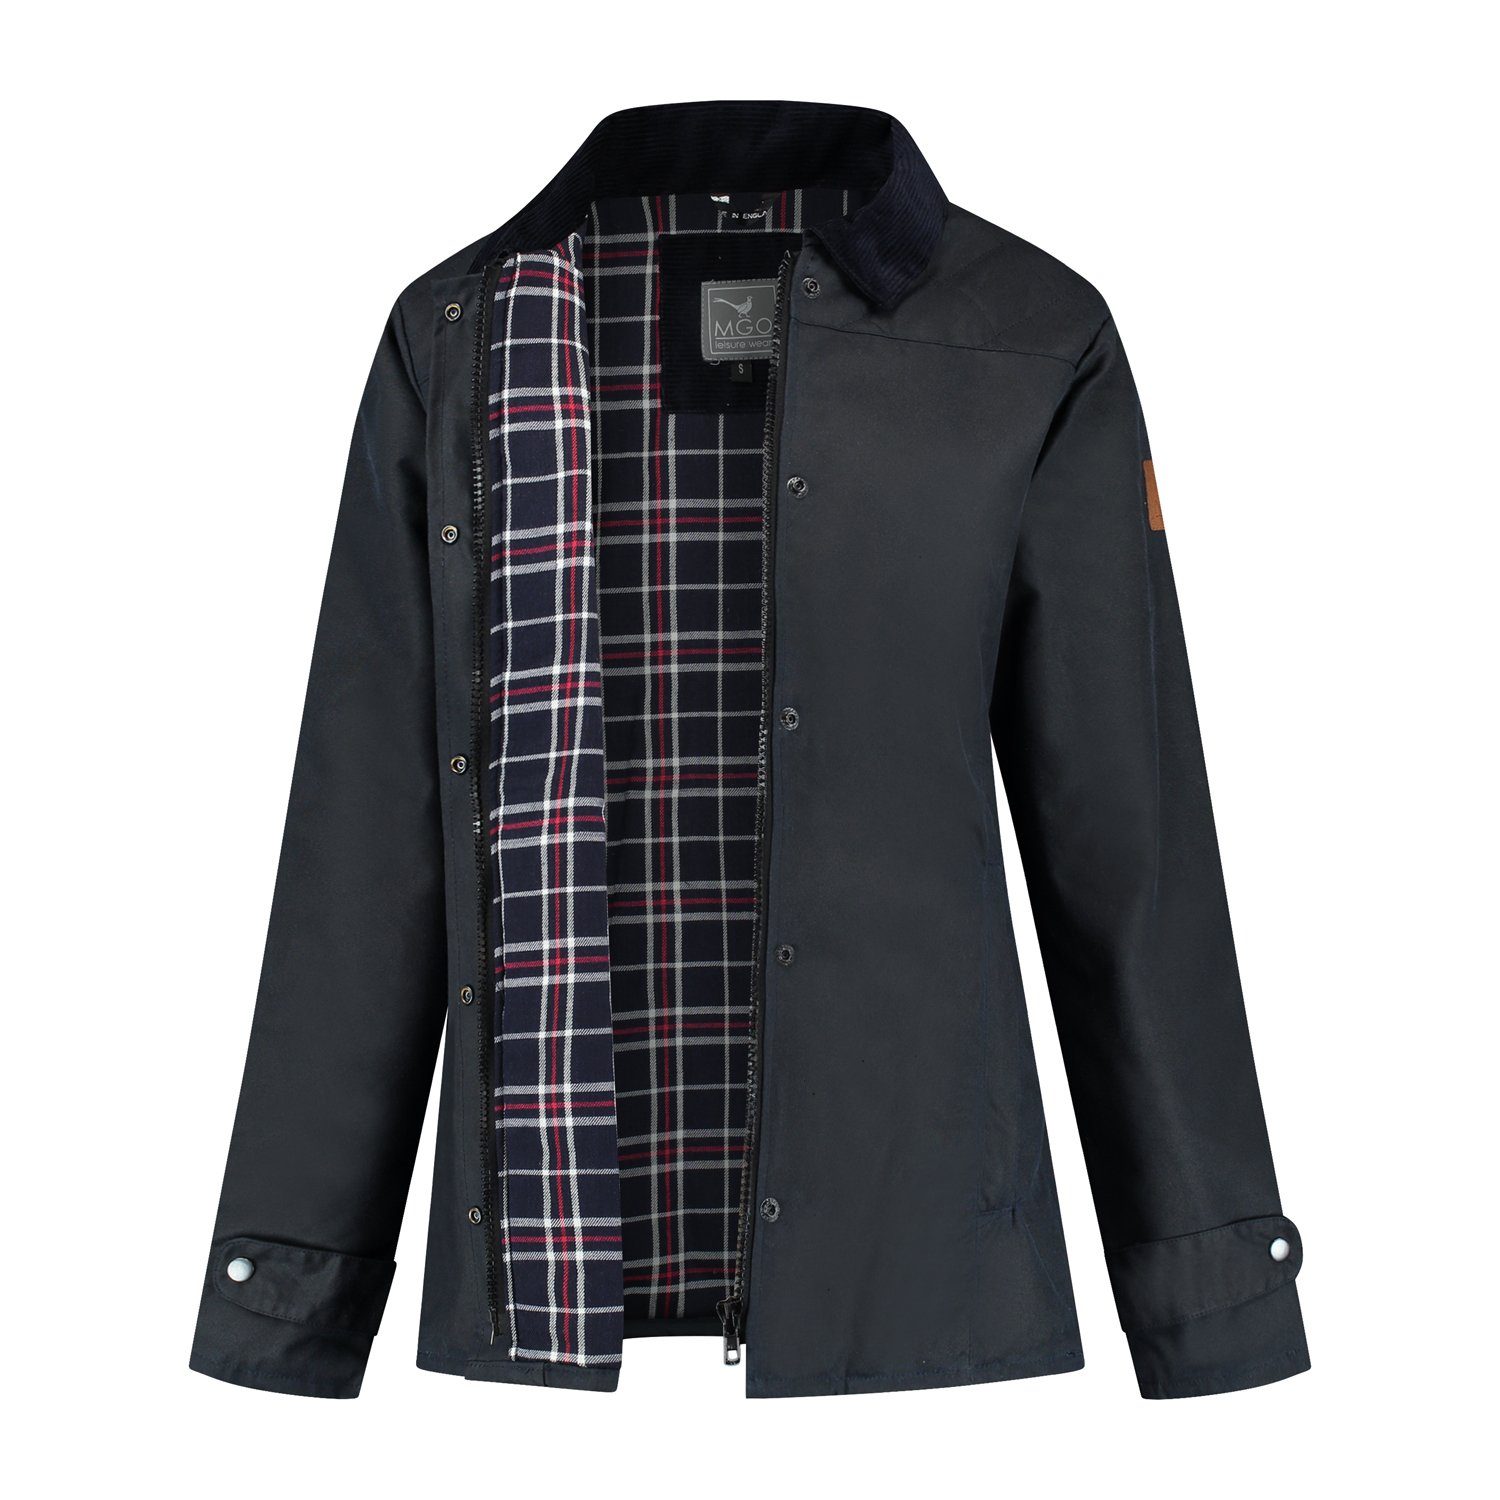 MGO Outdoorjacke Meghan Wax Jacket winddicht und wasserabweisend